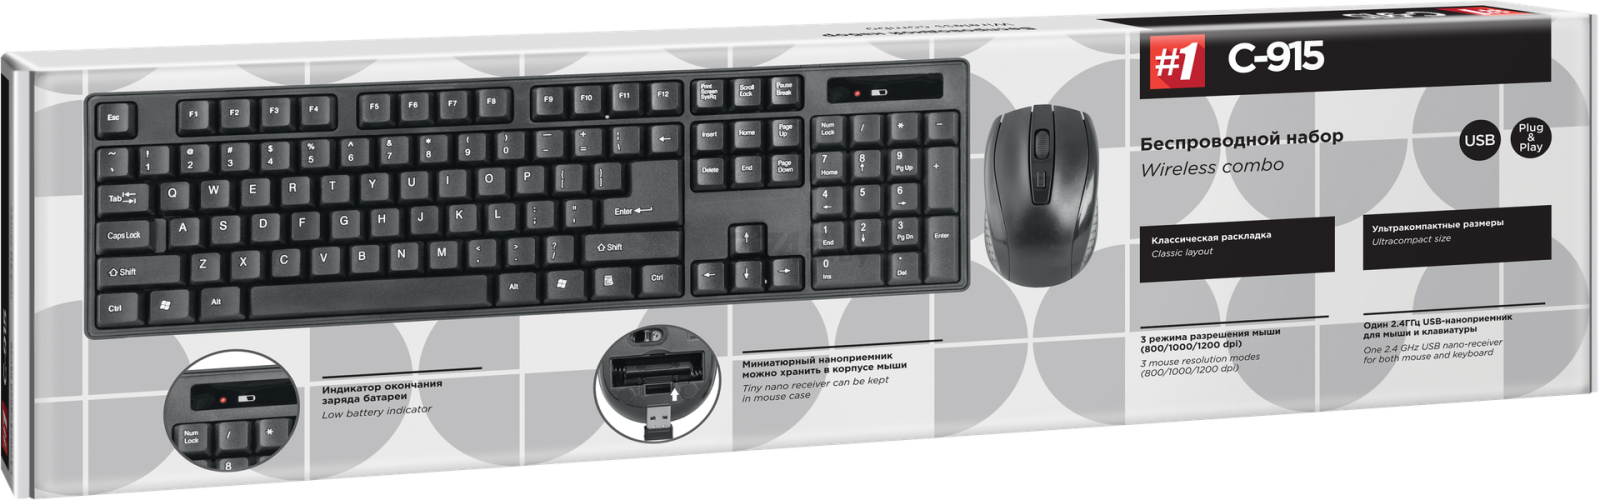 Комплект беспроводной клавиатура и мышь DEFENDER C-915 (45915) - Фото 5